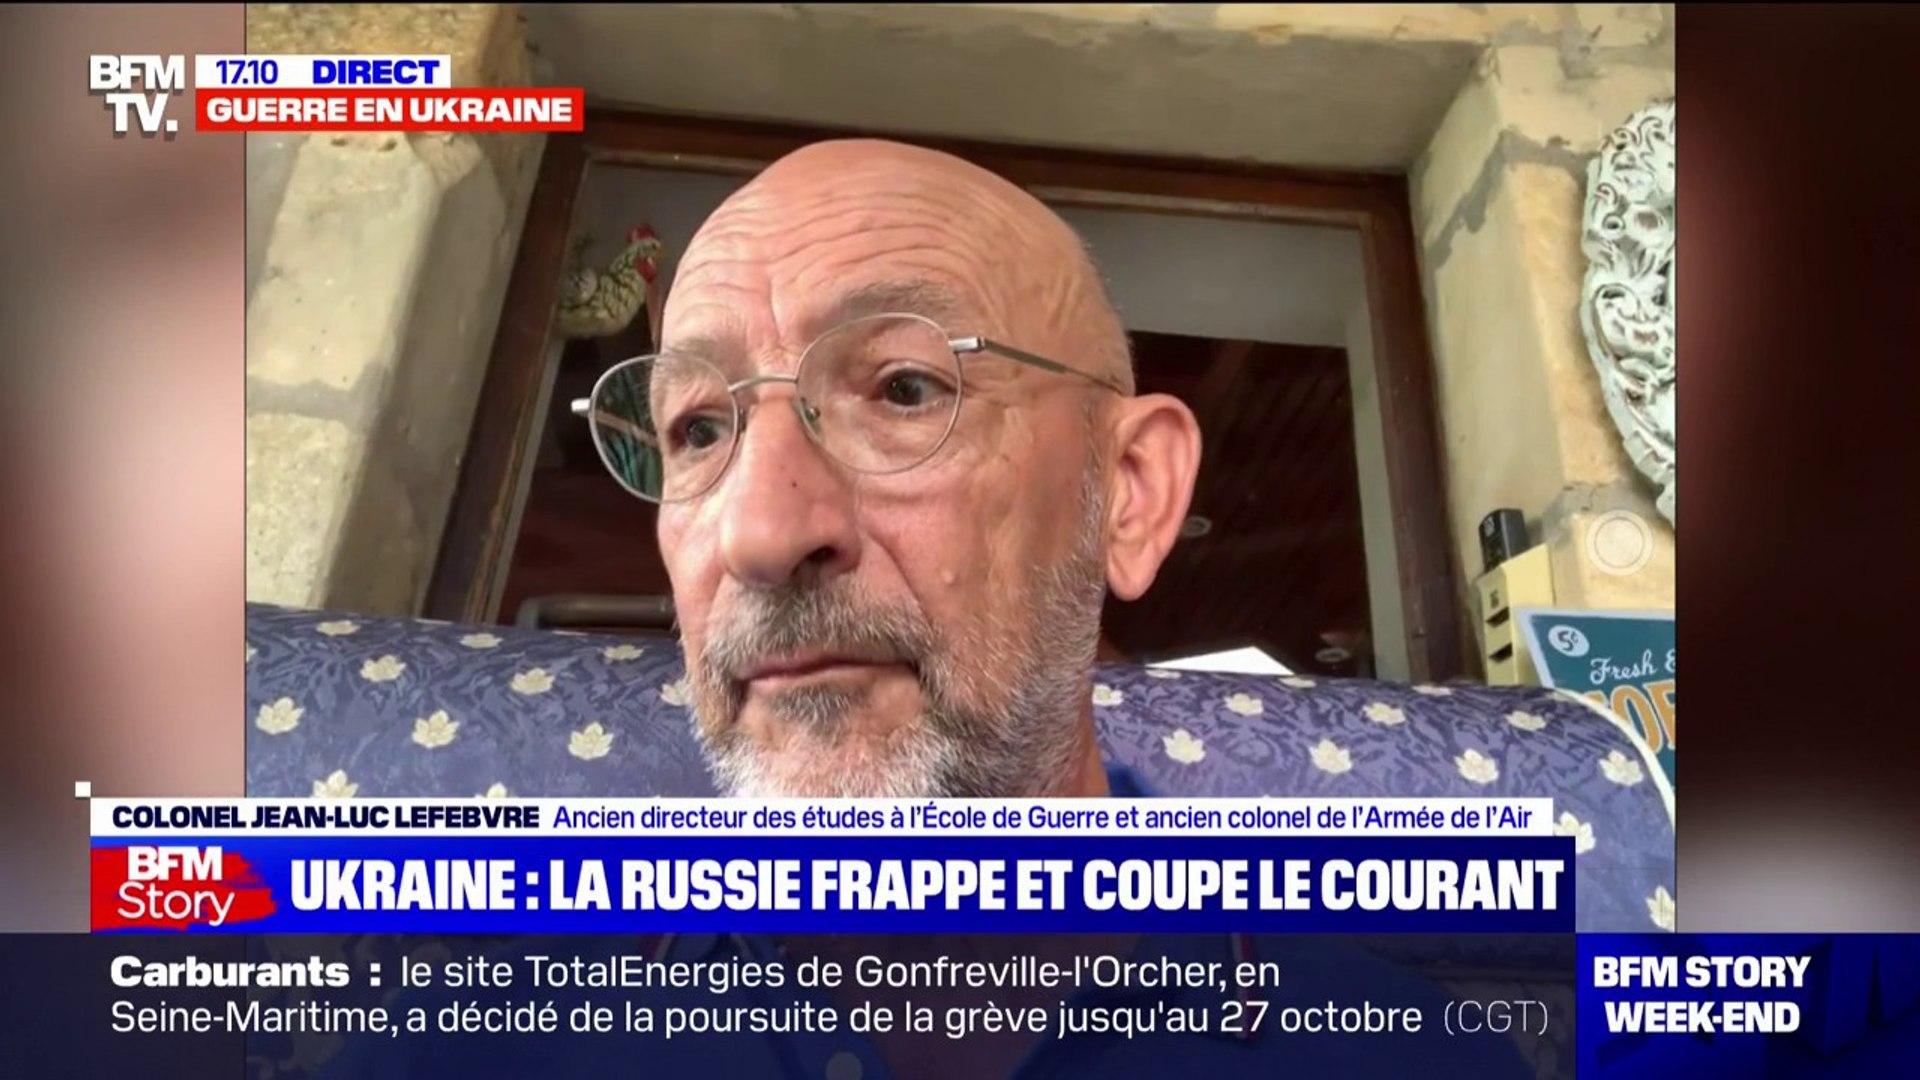 Colonel Jean-Luc Lefebvre: "Les Russes ne font pas la guerre pour la  gagner" - Vidéo Dailymotion